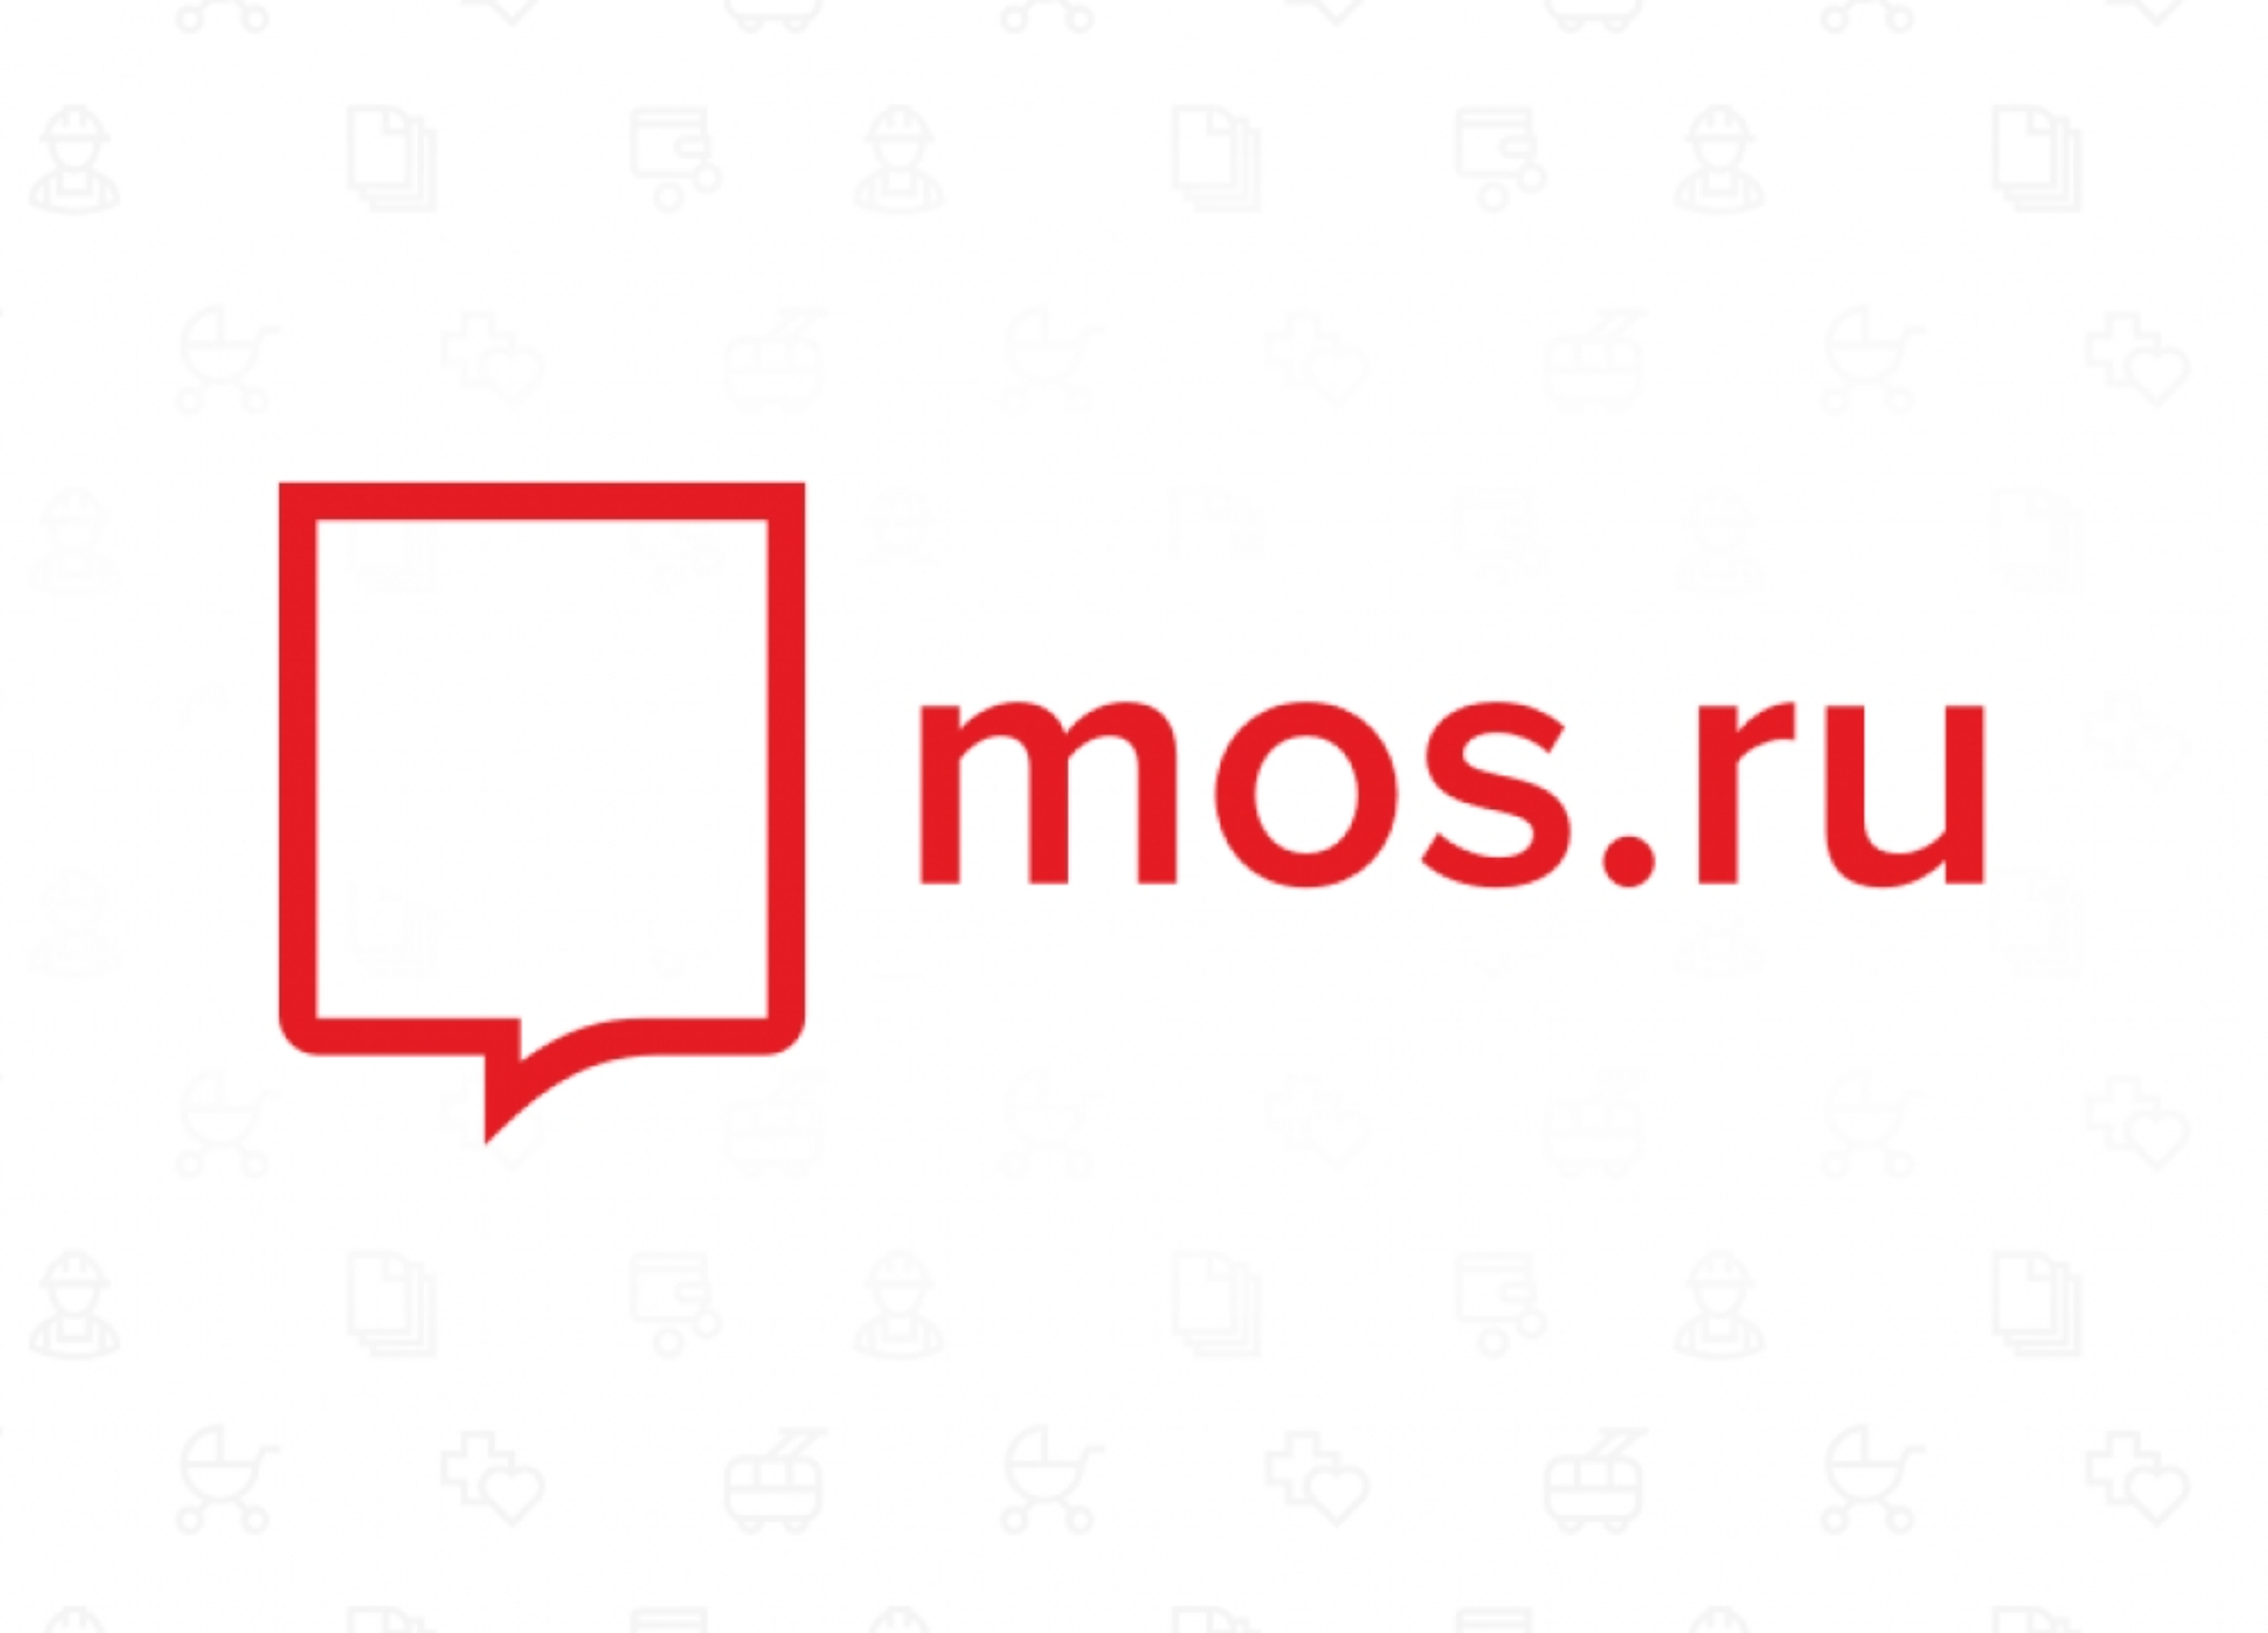 Https conf profil mos ru. Mos.ru логотип. Логотип сайта мэра Москвы. Мос РК.